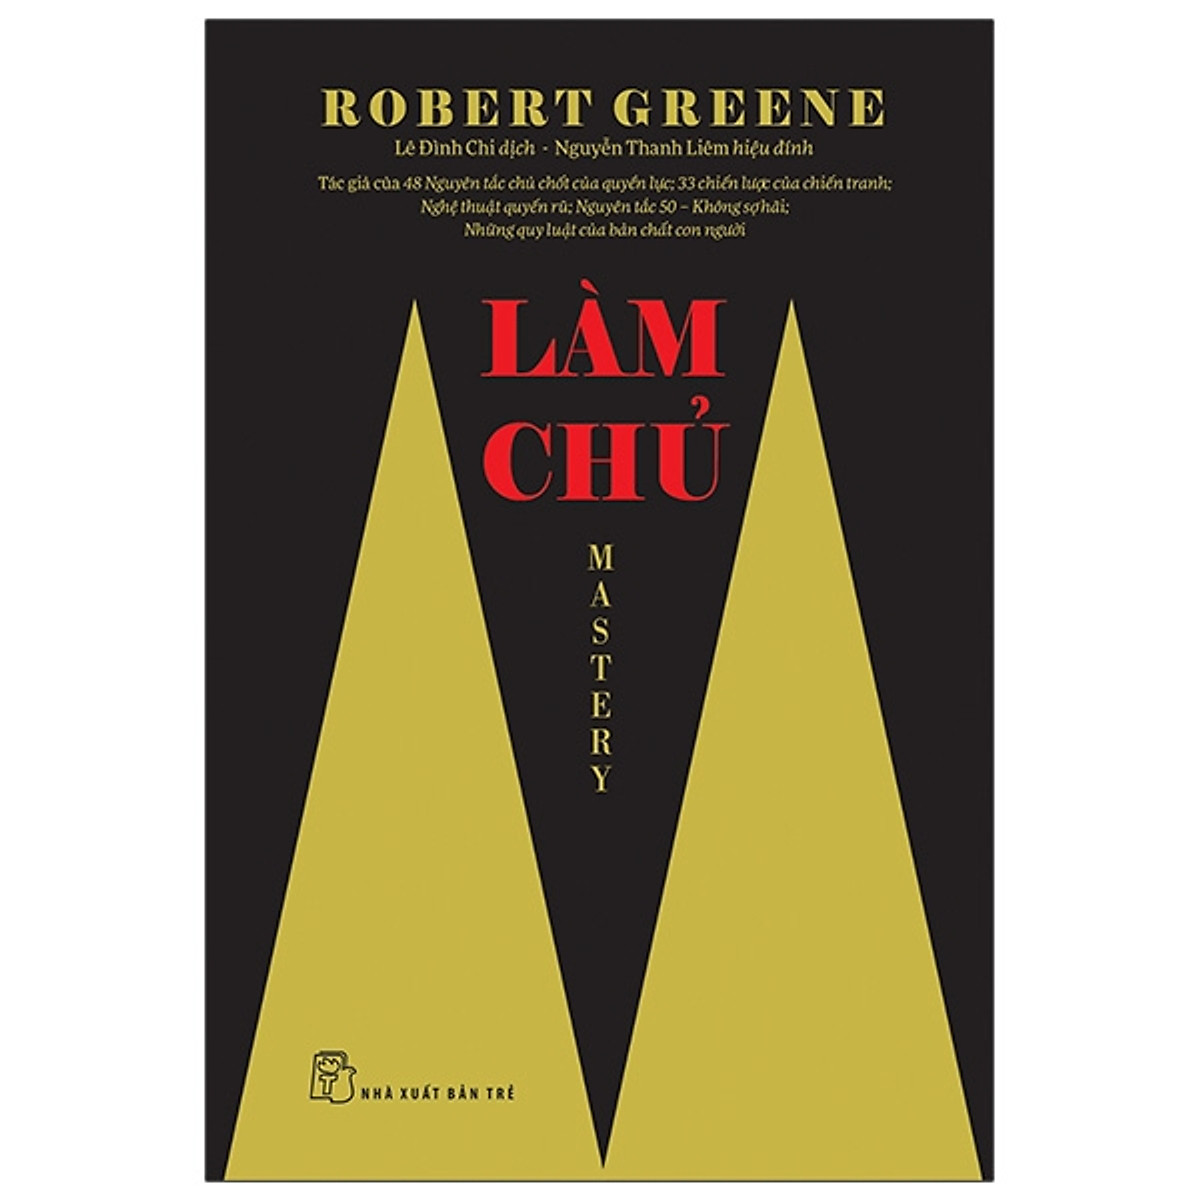 Combo 3 quyển sách của Robert Greene: Làm chủ + 48 Nguyên tắc chủ chốt của quyền lực + 33 Chiến lược của chiến tranh